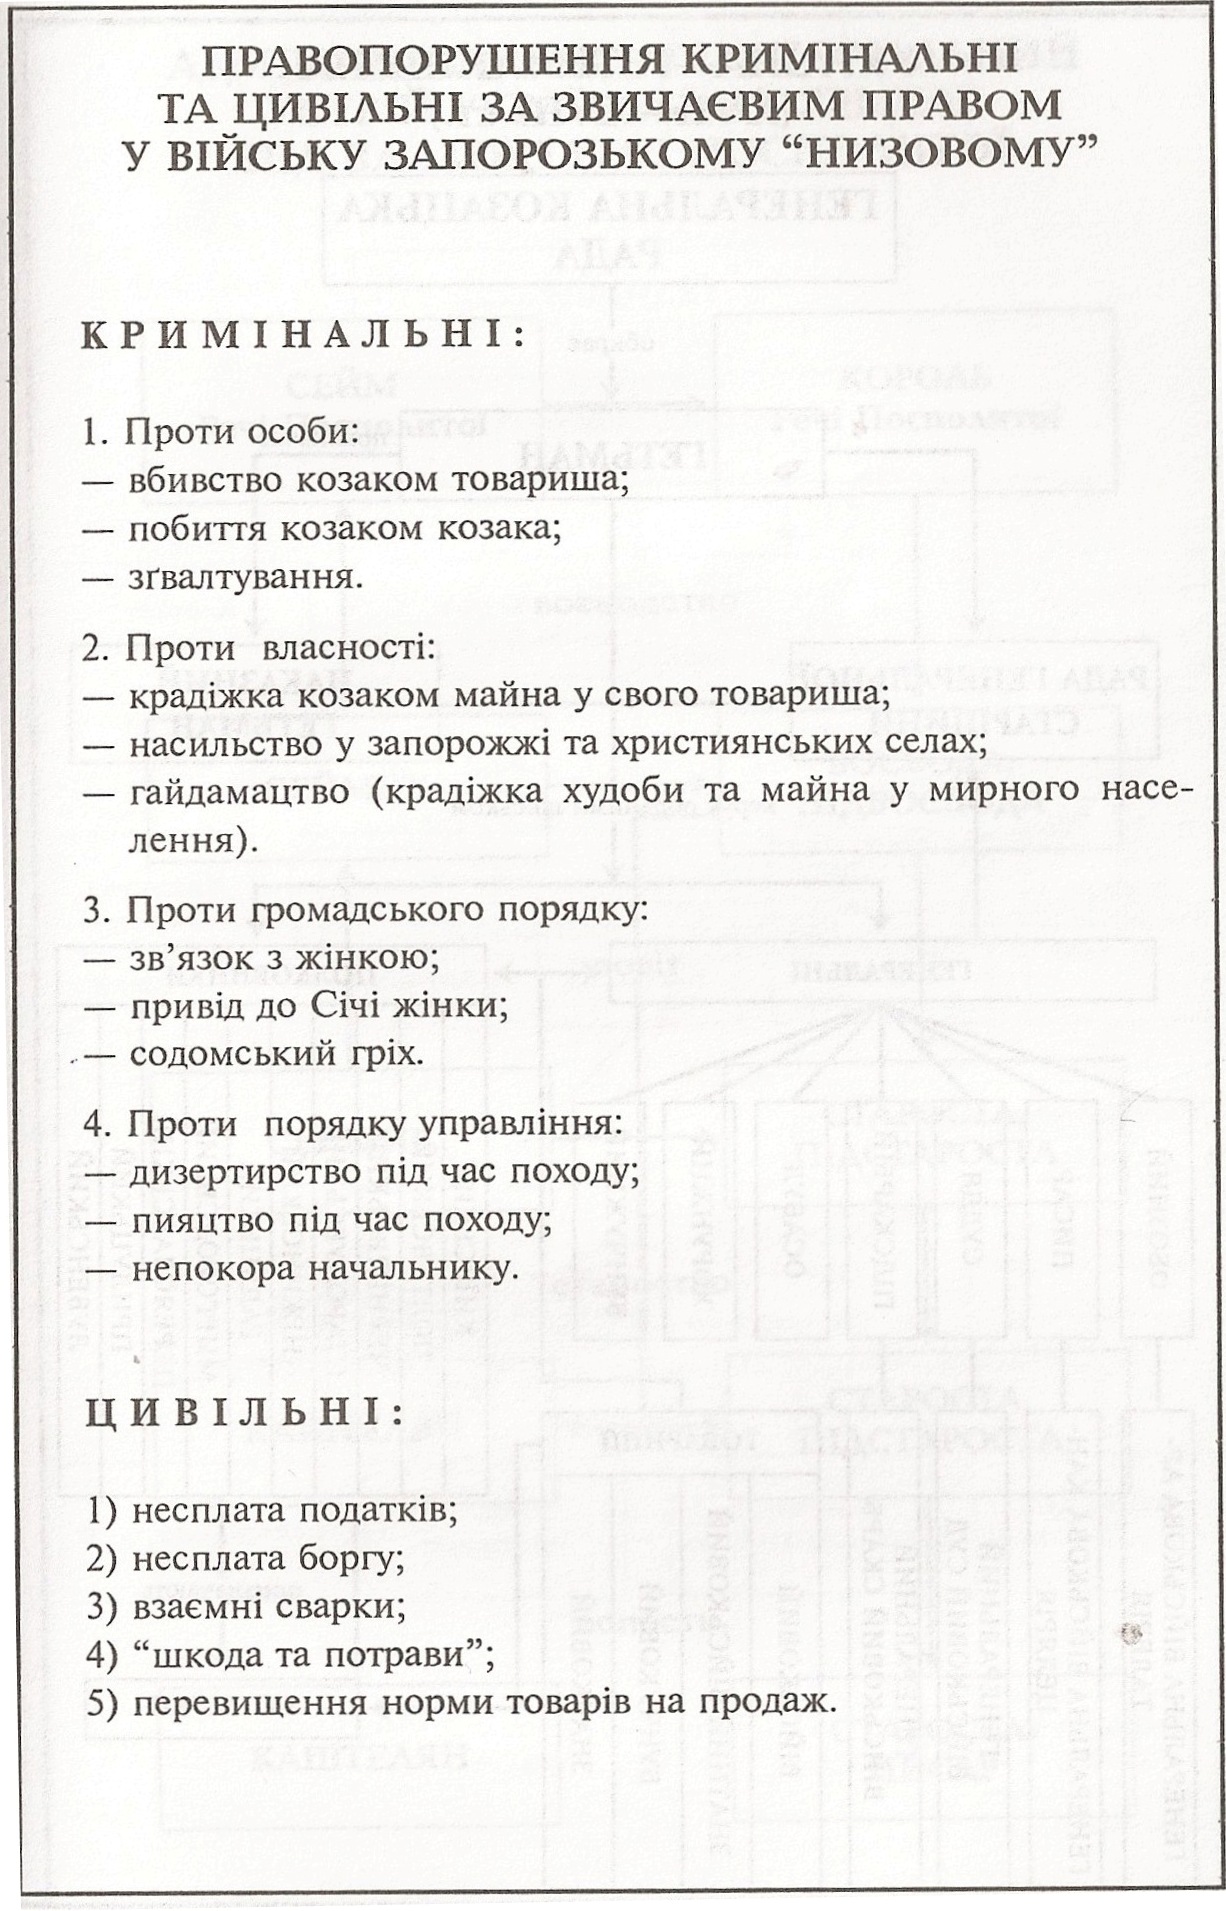 Таблица: Правонарушения уголовные и гражданские по обычному праву в Войске Запорожском Низовому